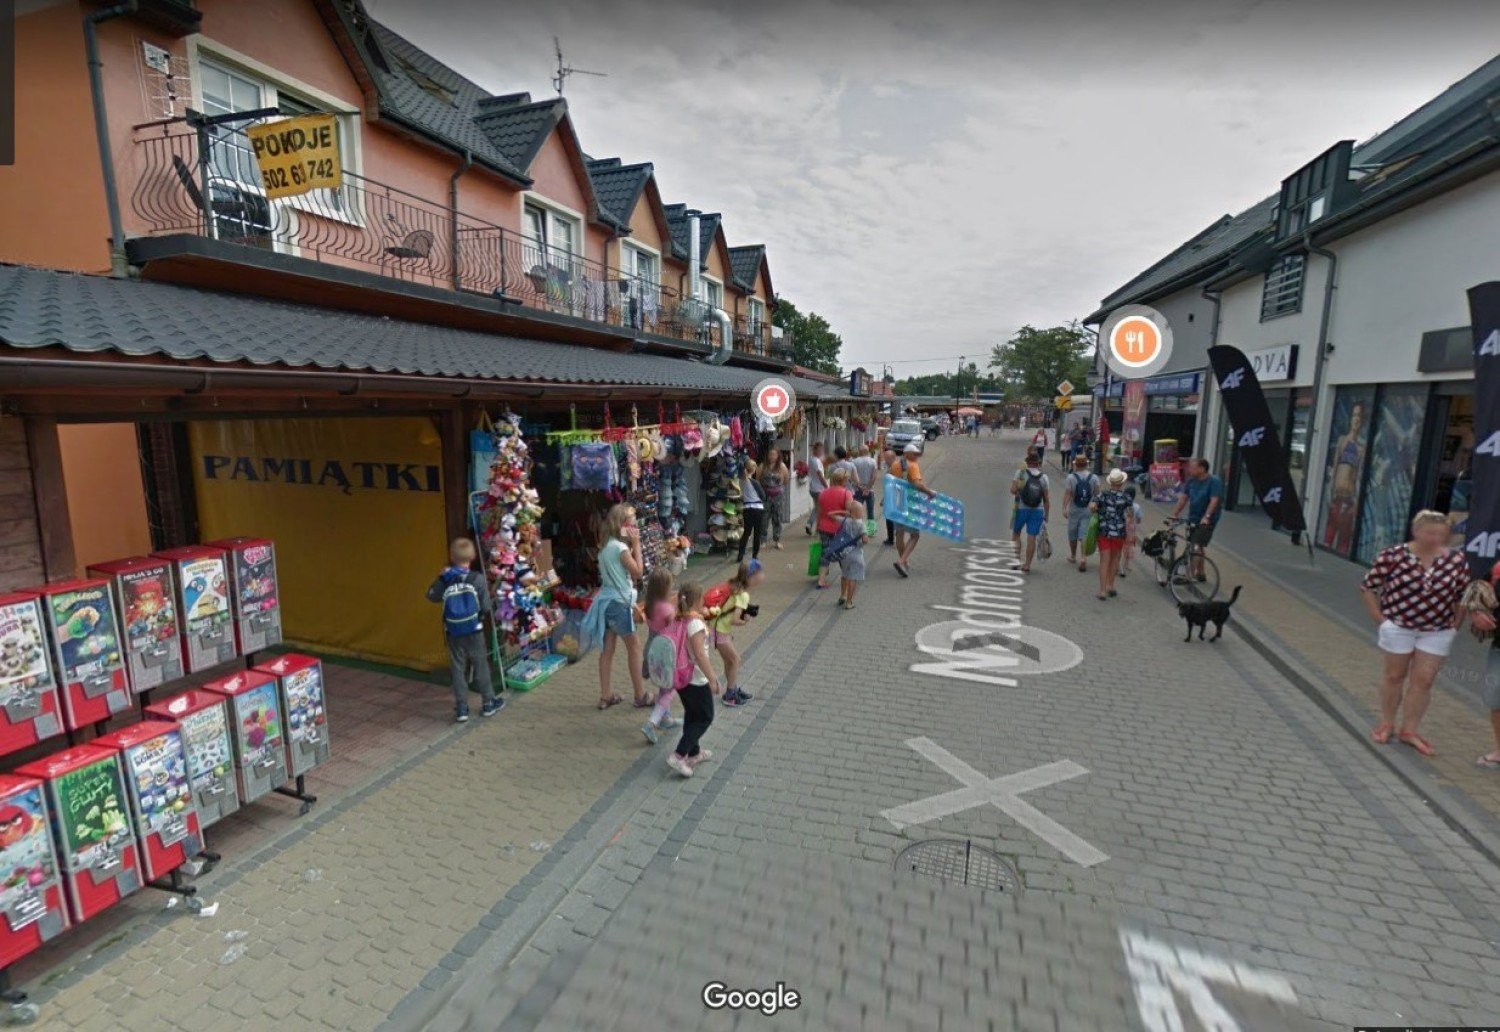 Upalny polski Dubaj w Google Street View! Turyści w